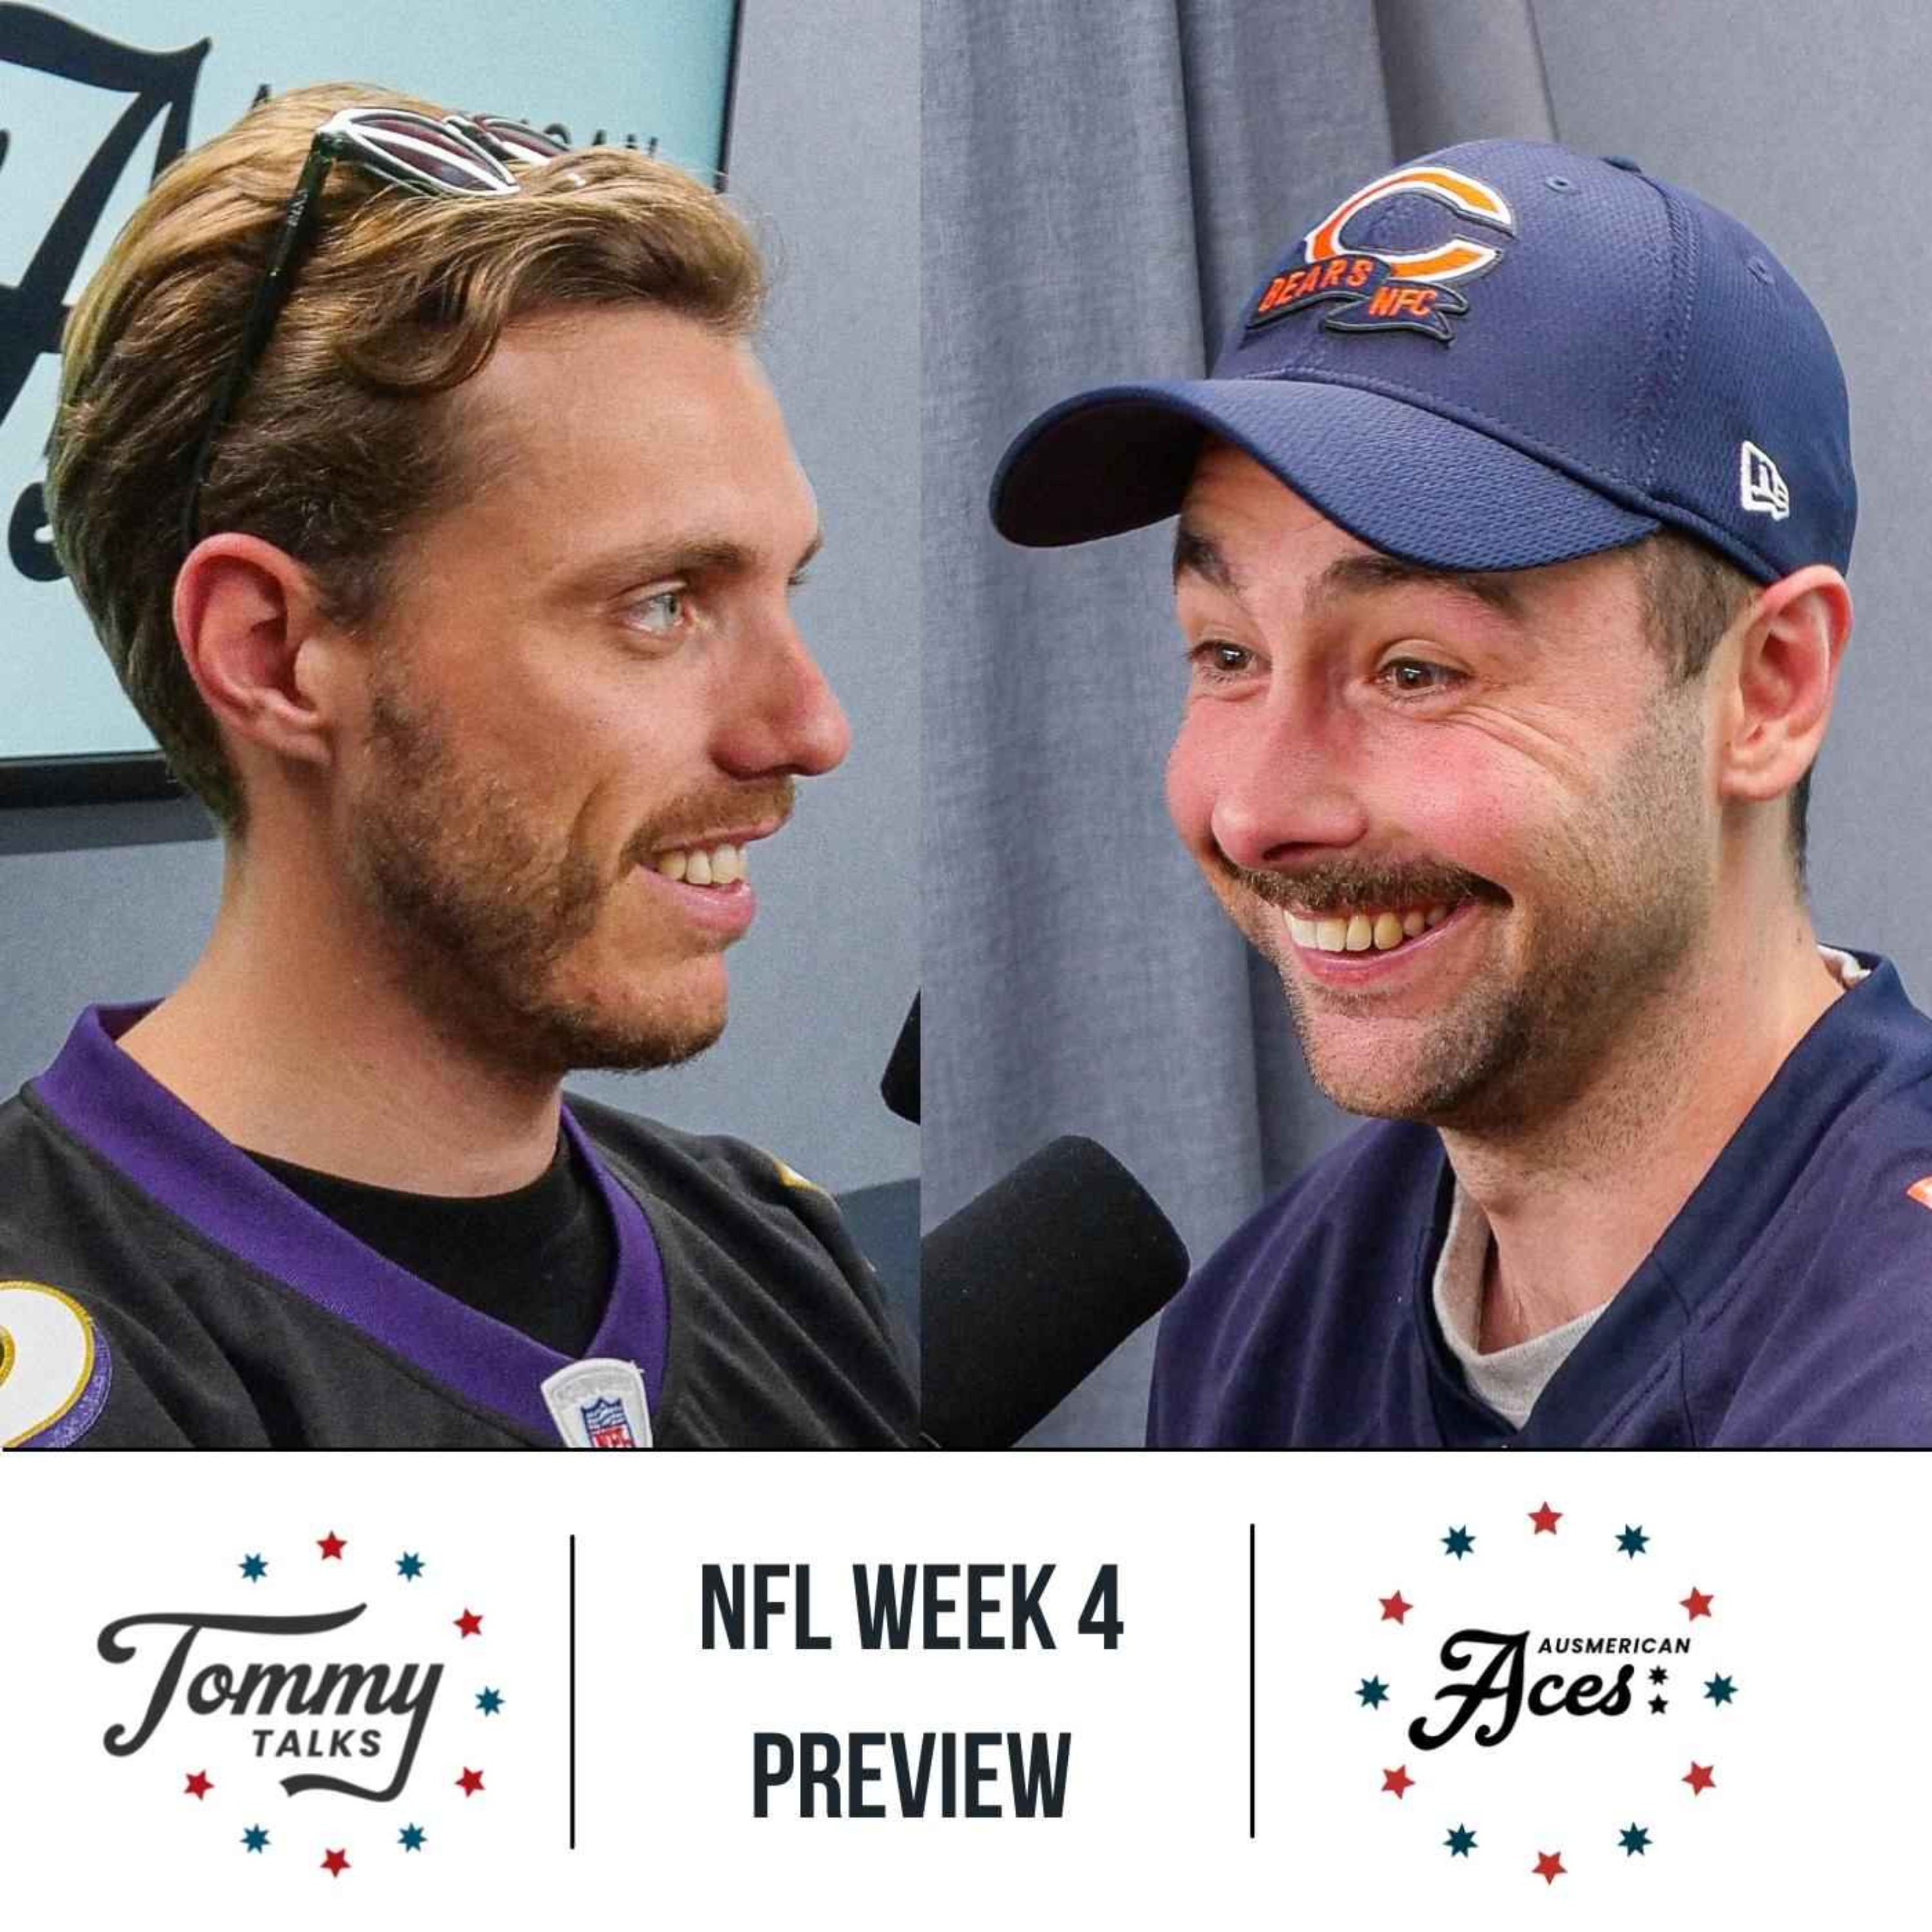 NFL week 4 preview